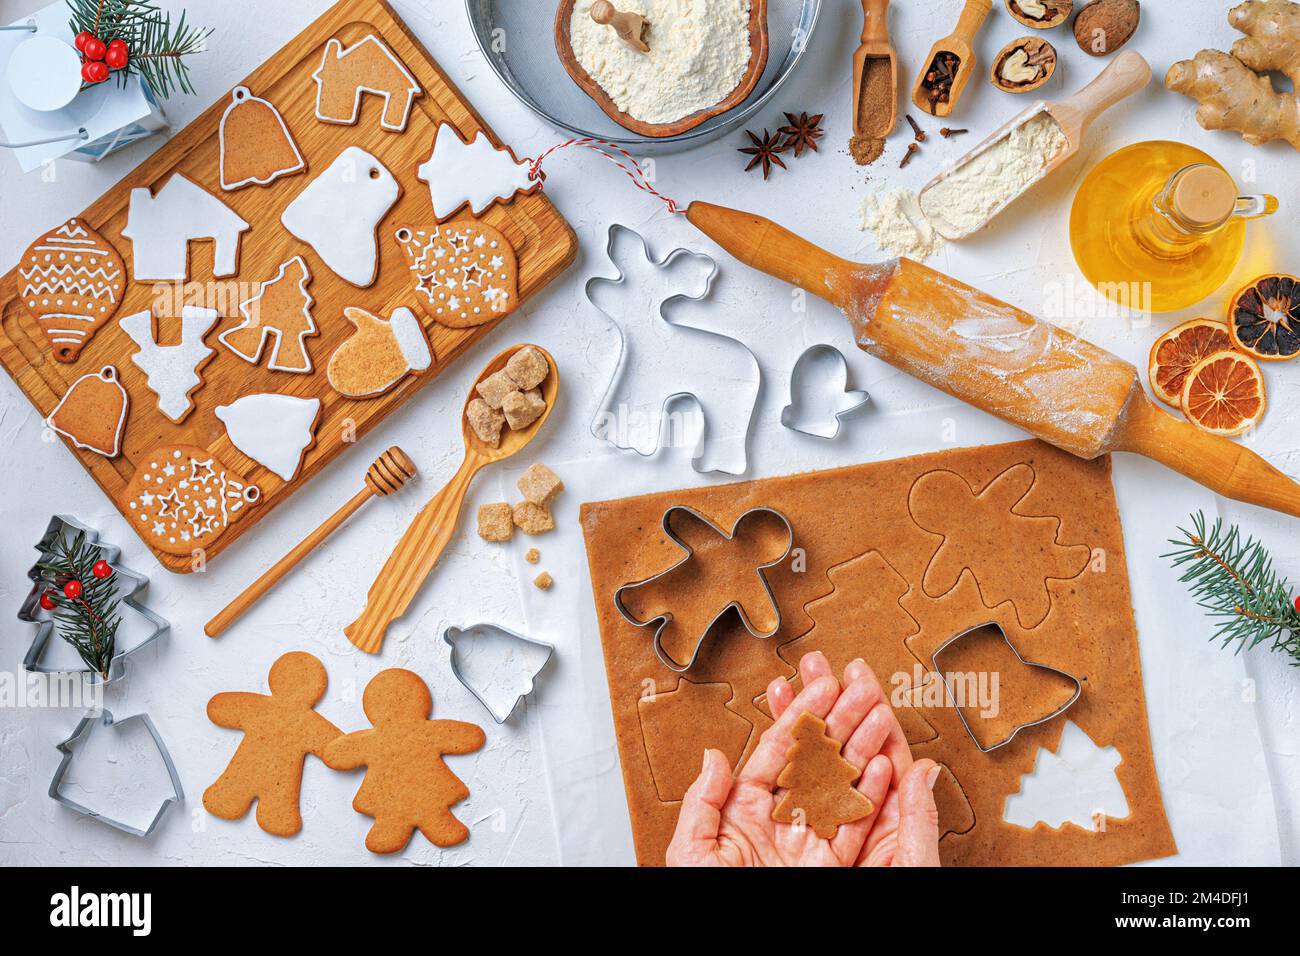 Weihnachtliches Lebkuchen in unterschiedlicher Form mit Zutaten für Lebkuchen und den Händen einer Bäckerin, Draufsicht, flach liegend Stockfoto